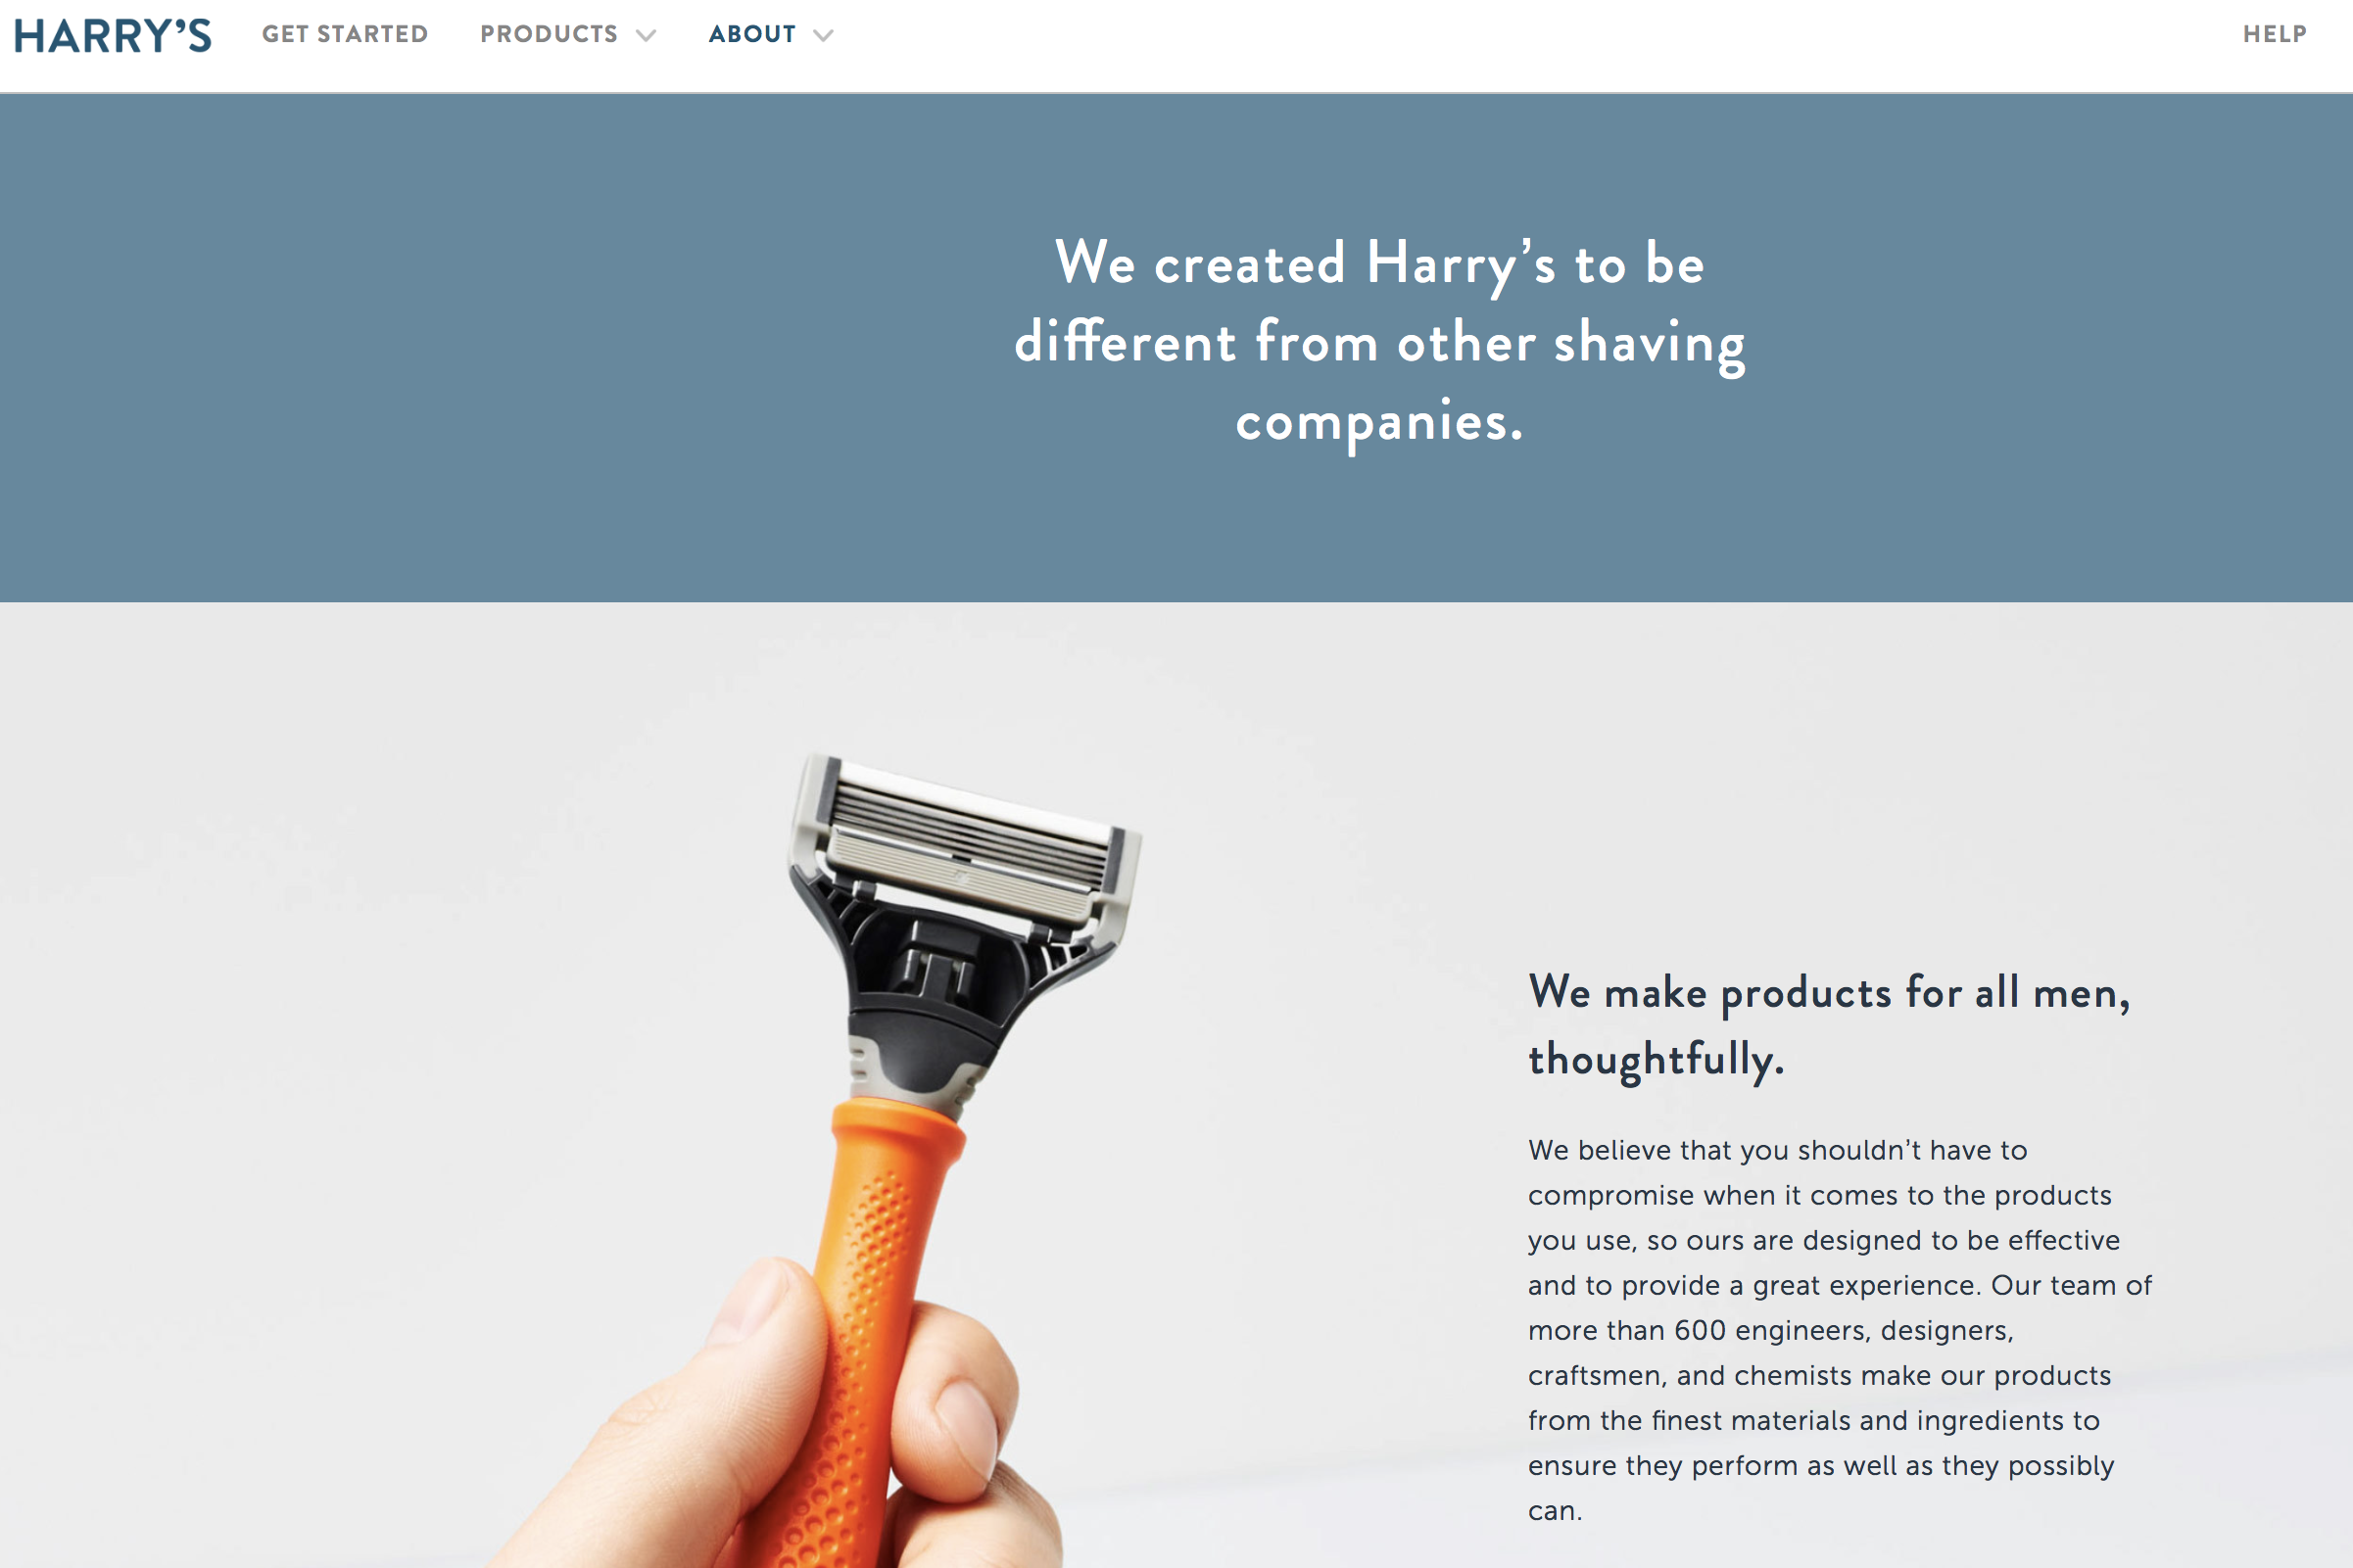 估值 13.7亿美元！创办6年的互联网剃刀及理容品牌 Harry’s 被美国个护巨头 Edgewell收购